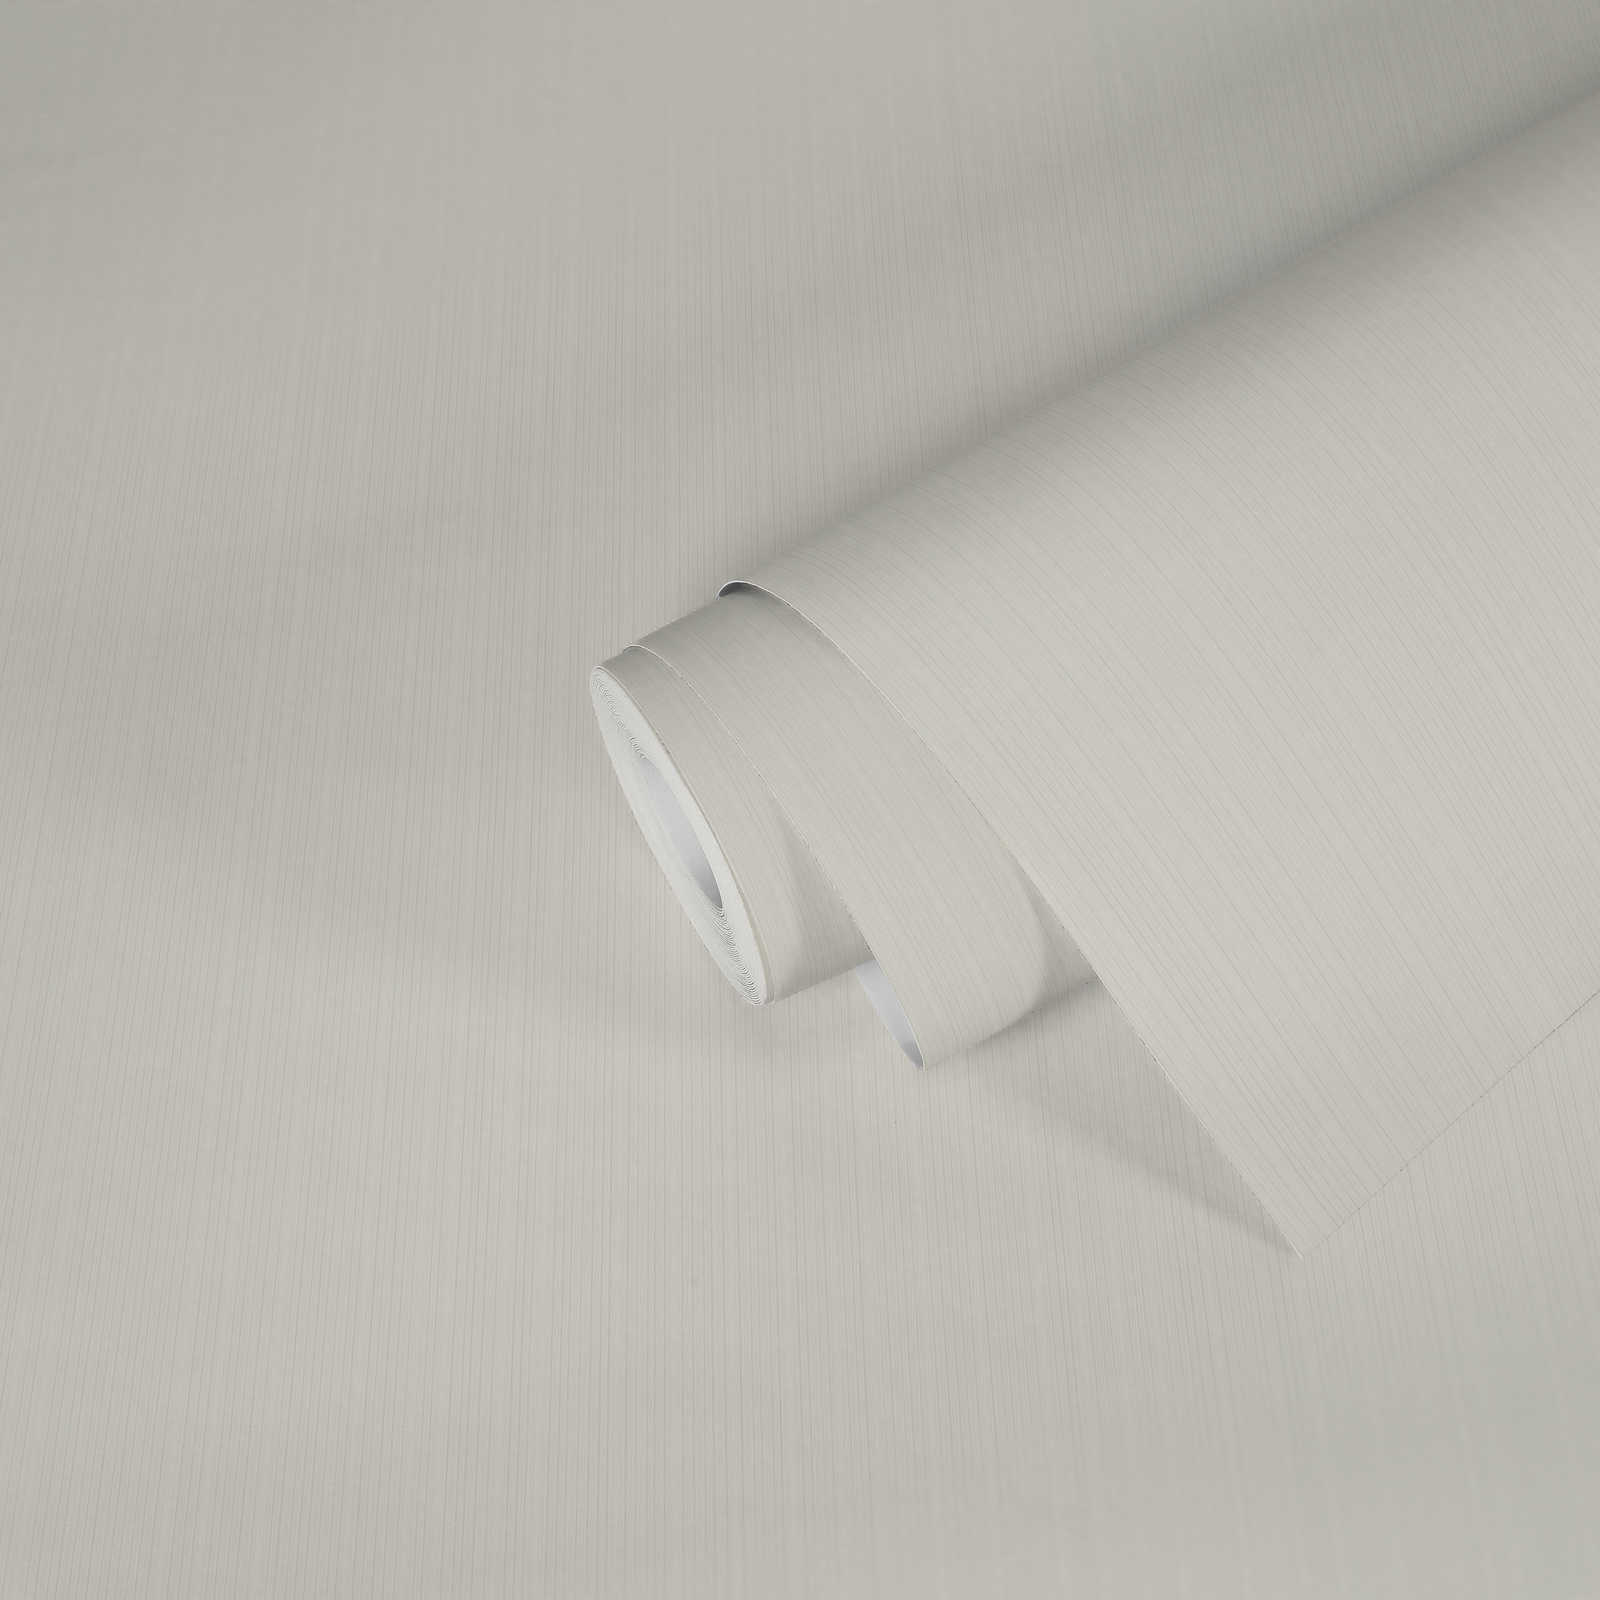             Effen behangpapier met subtiele kleur arceringen - wit
        